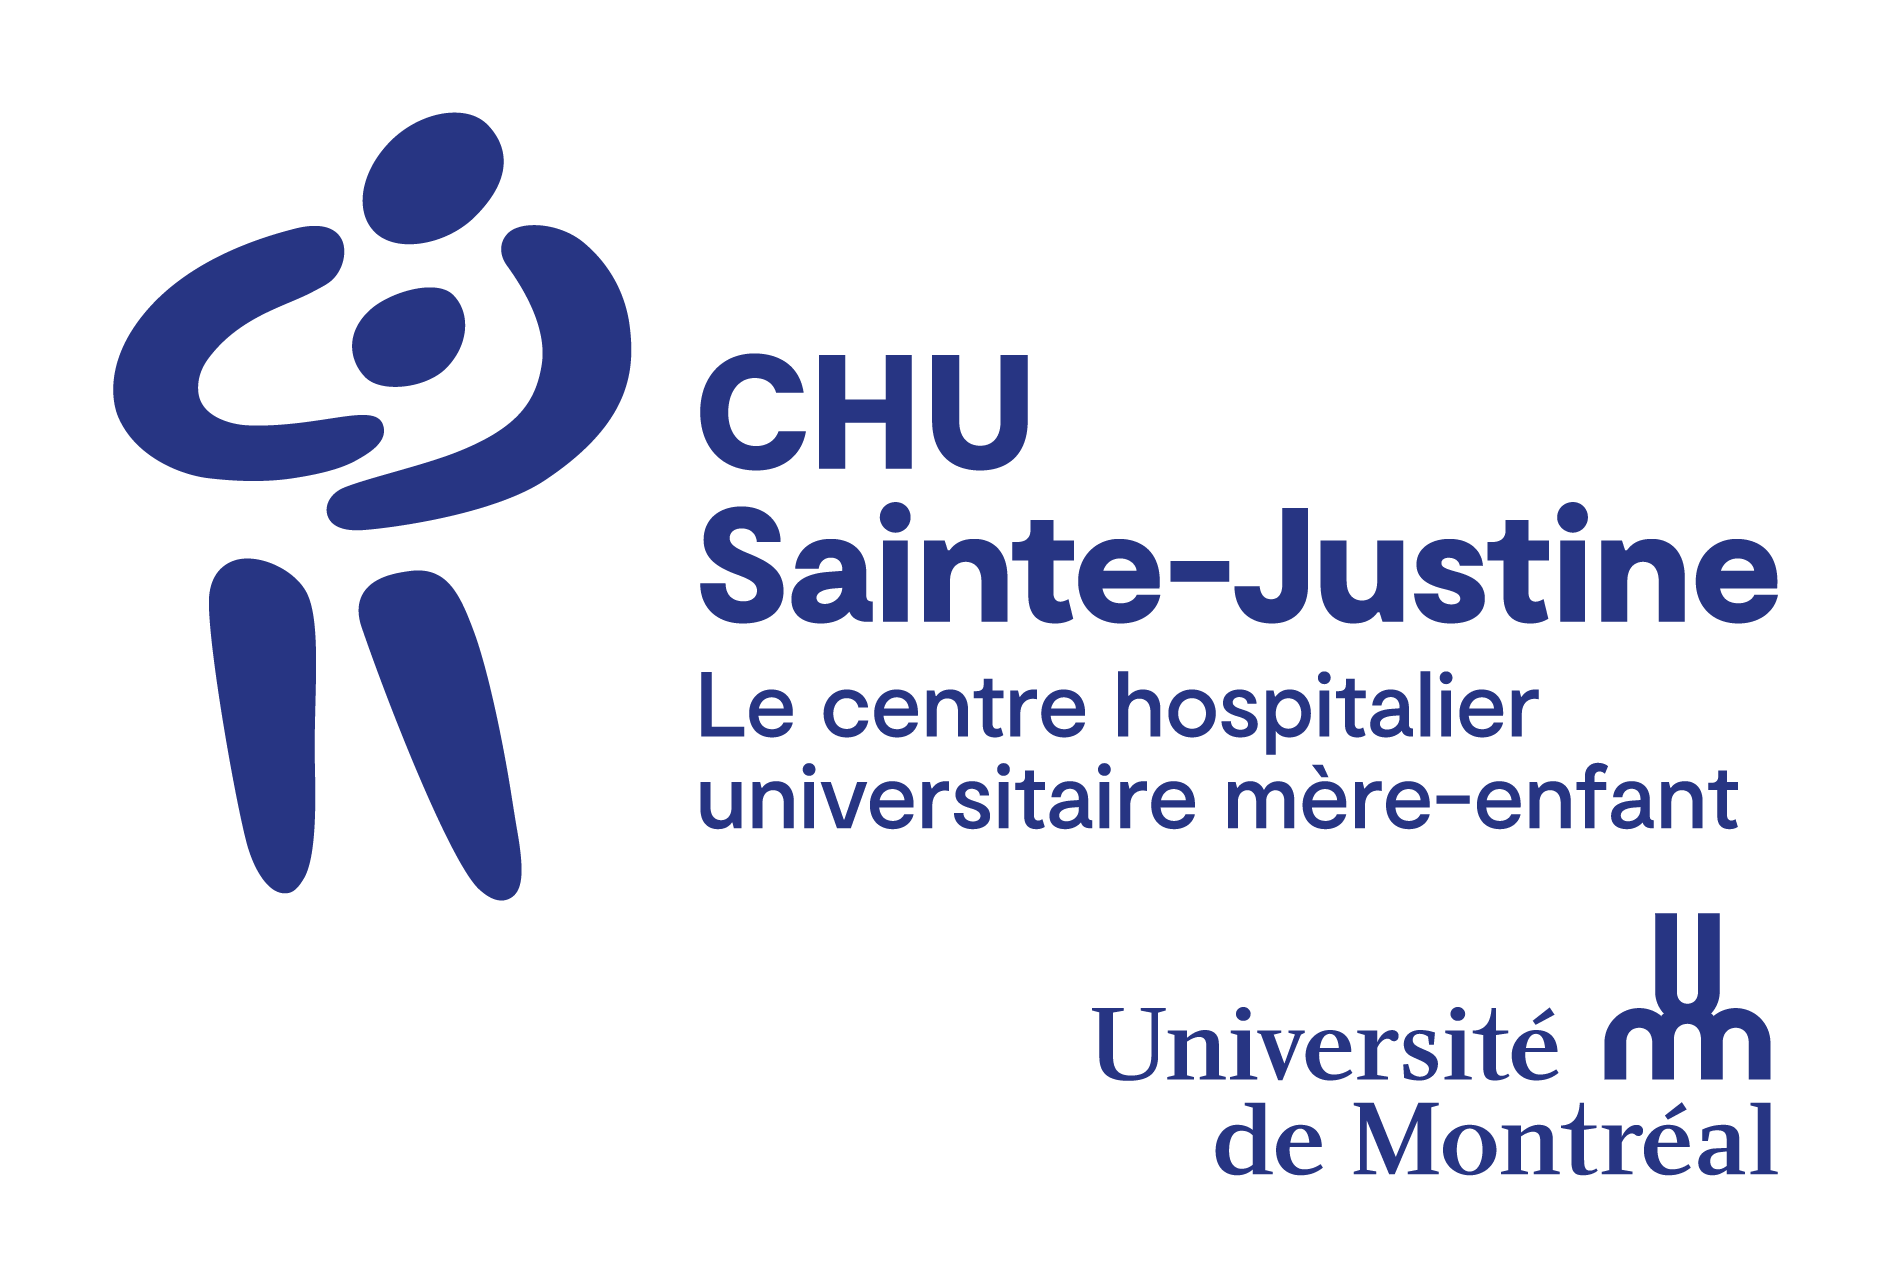 CHU Sainte Justine Research Center